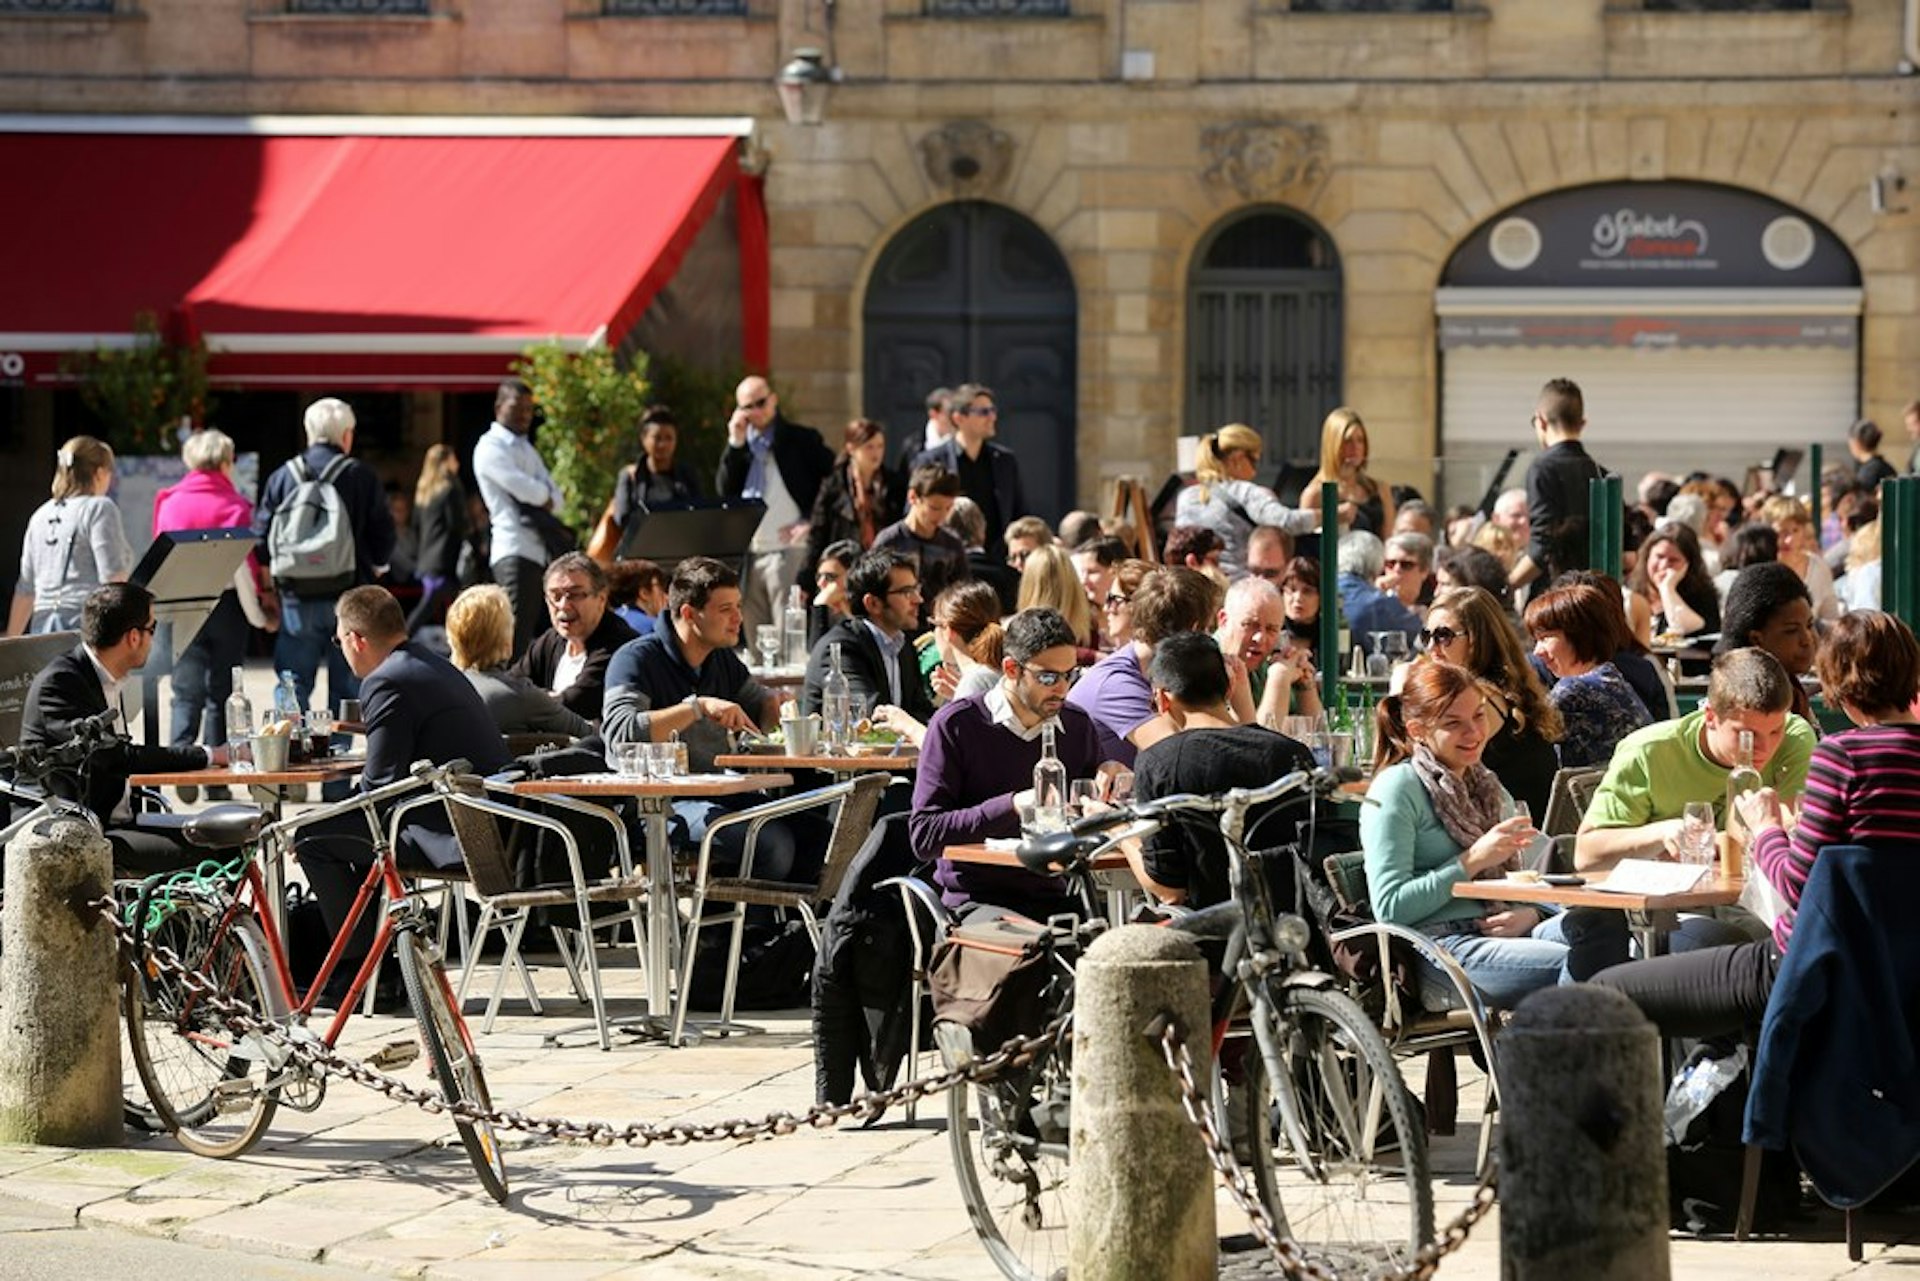 Bordeaux has a buzzing restaurant scene. Image ©